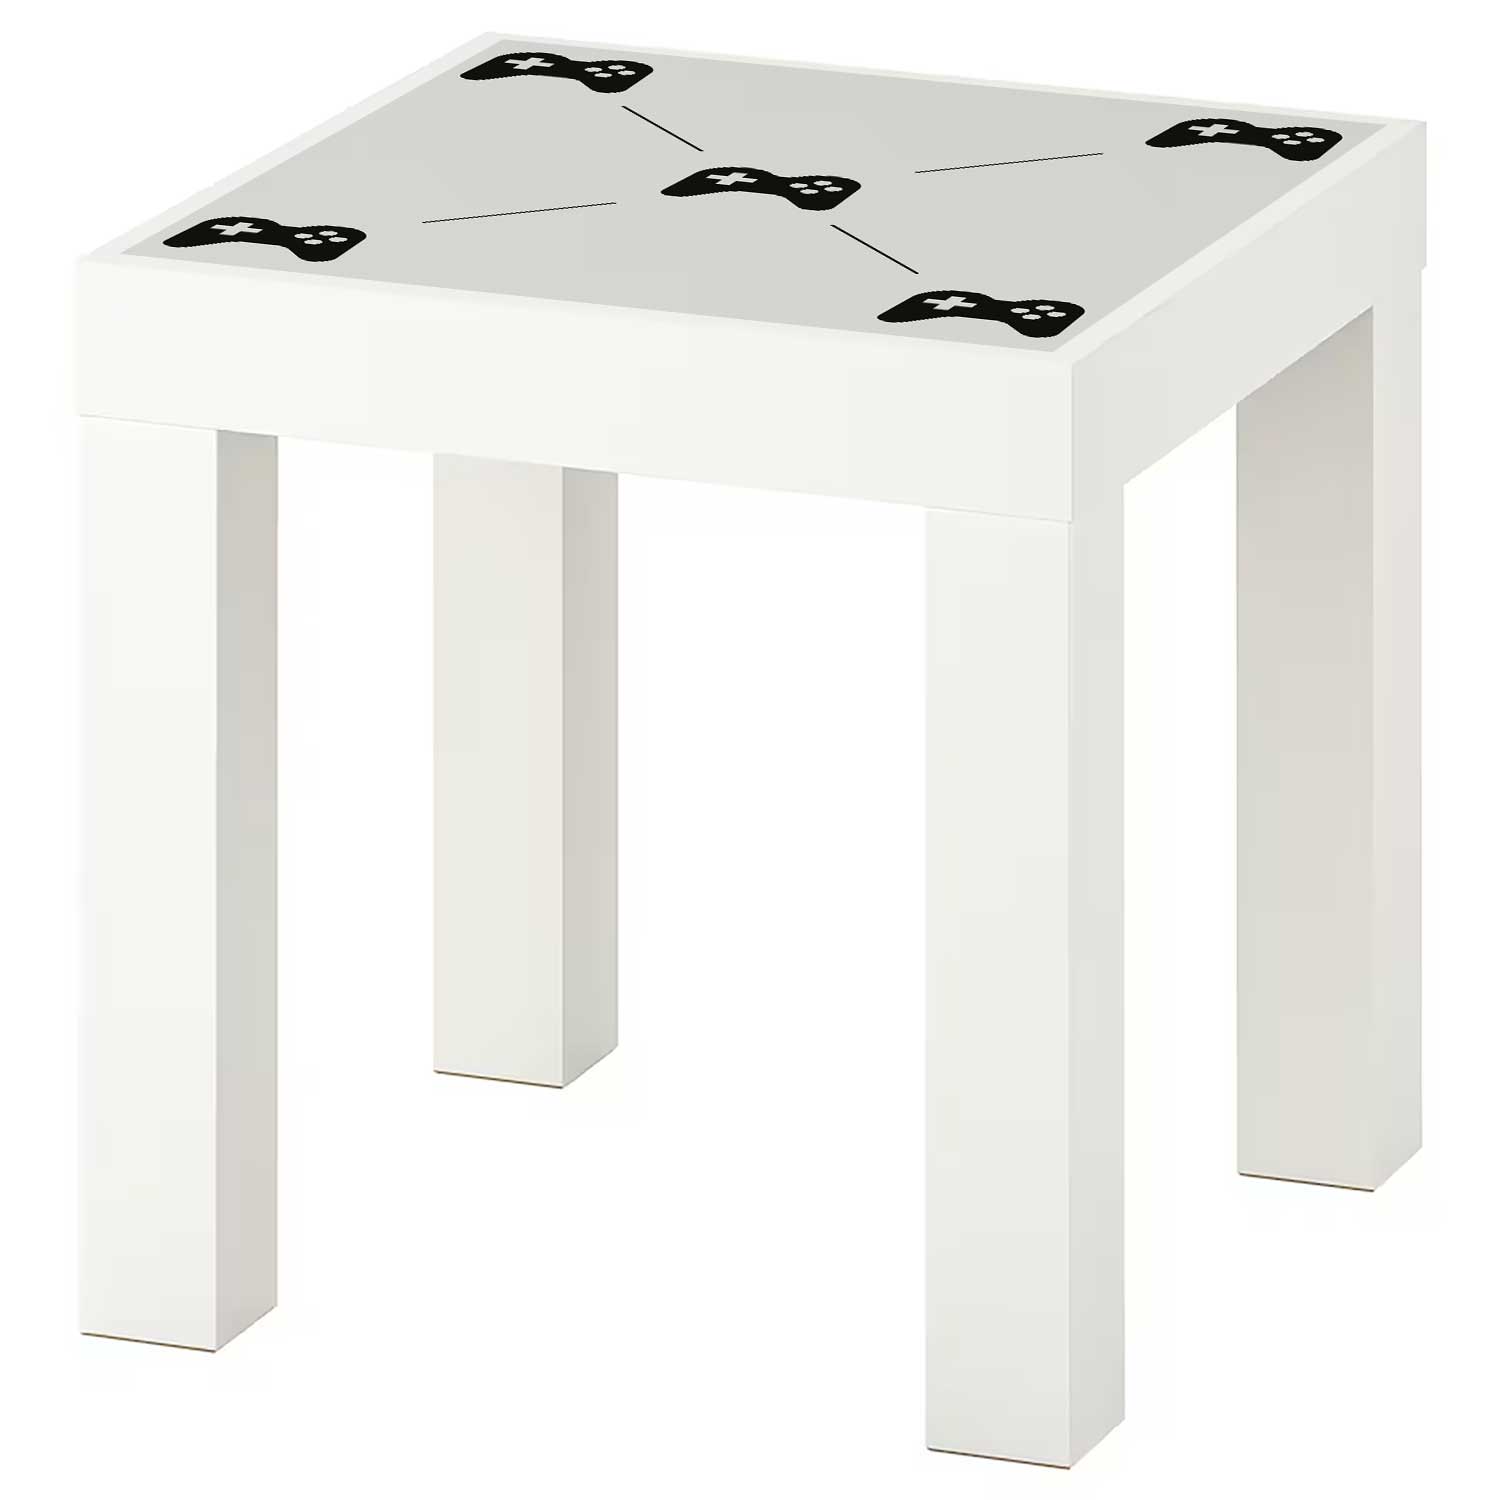 Möbelfolie für IKEA Lack Tisch 35x35 cm 'Gamepad'